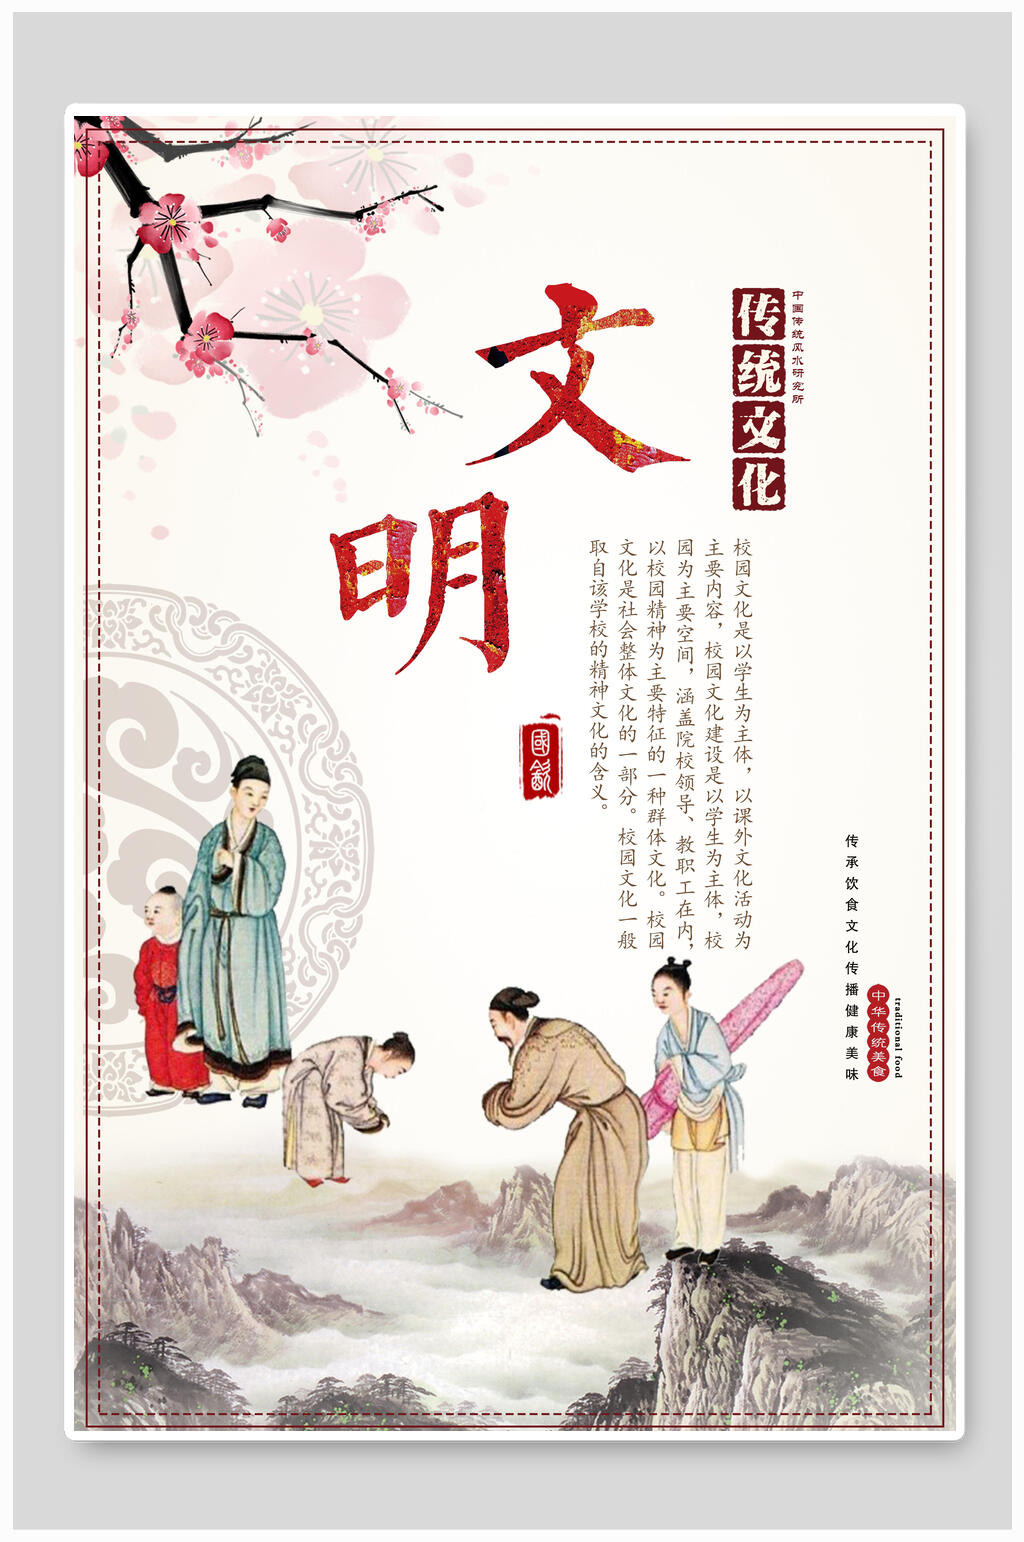 礼仪文化系列挂画海报中国传统文化校园文化海报文明礼仪立即下载礼仪